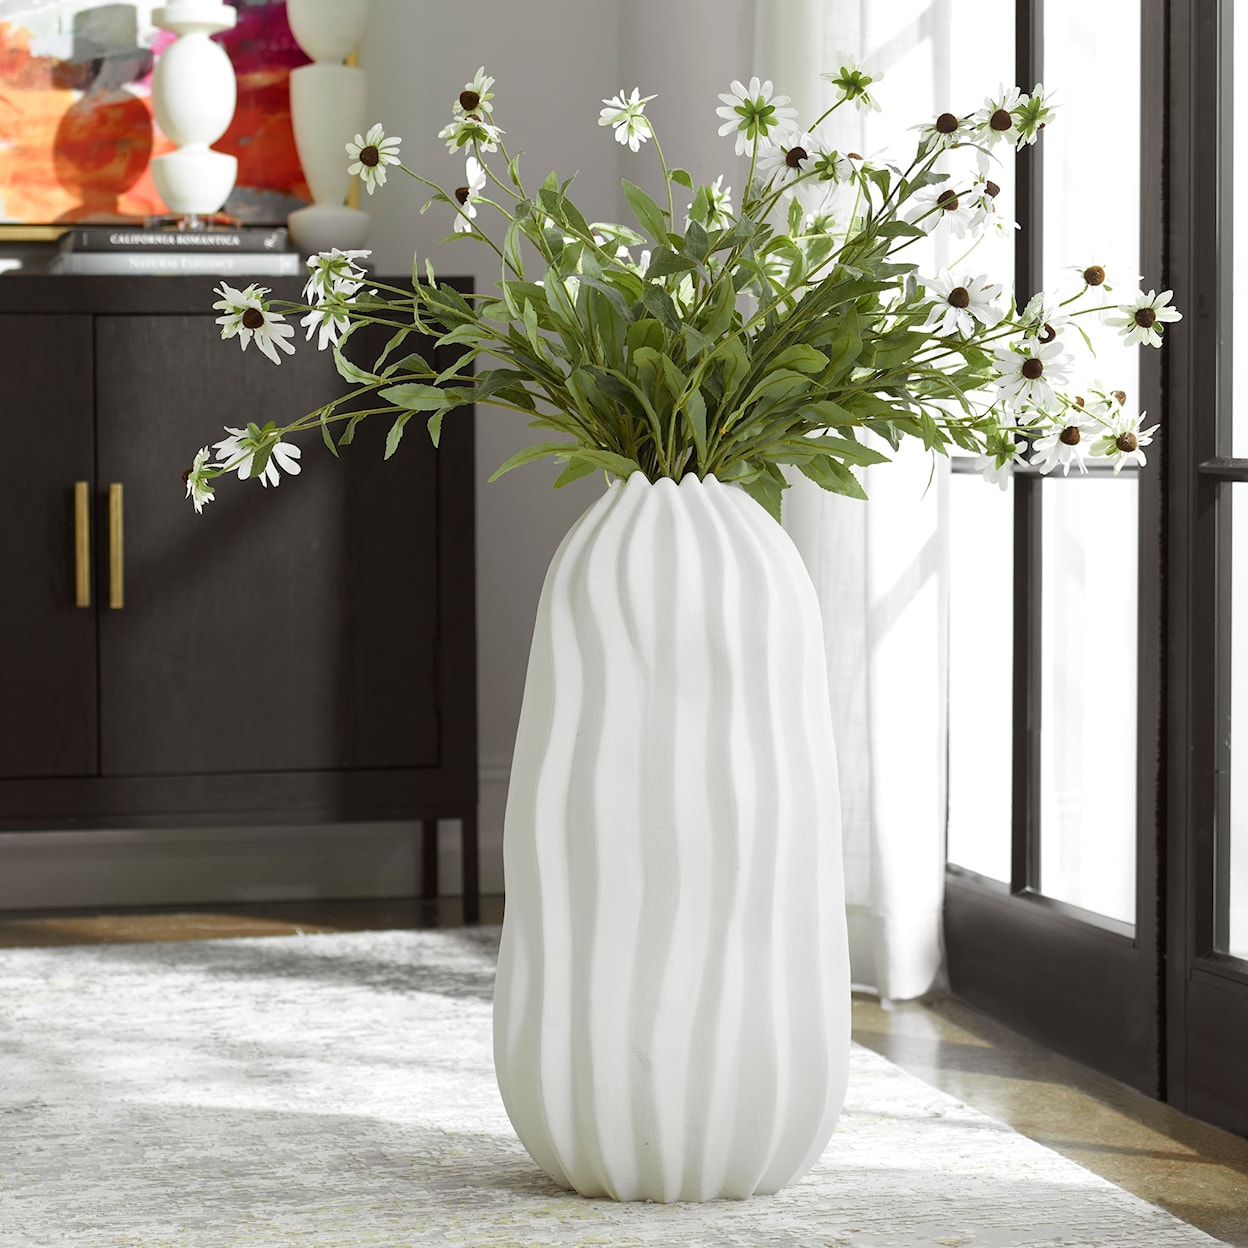 Uttermost Merritt Merritt White Floor Vase